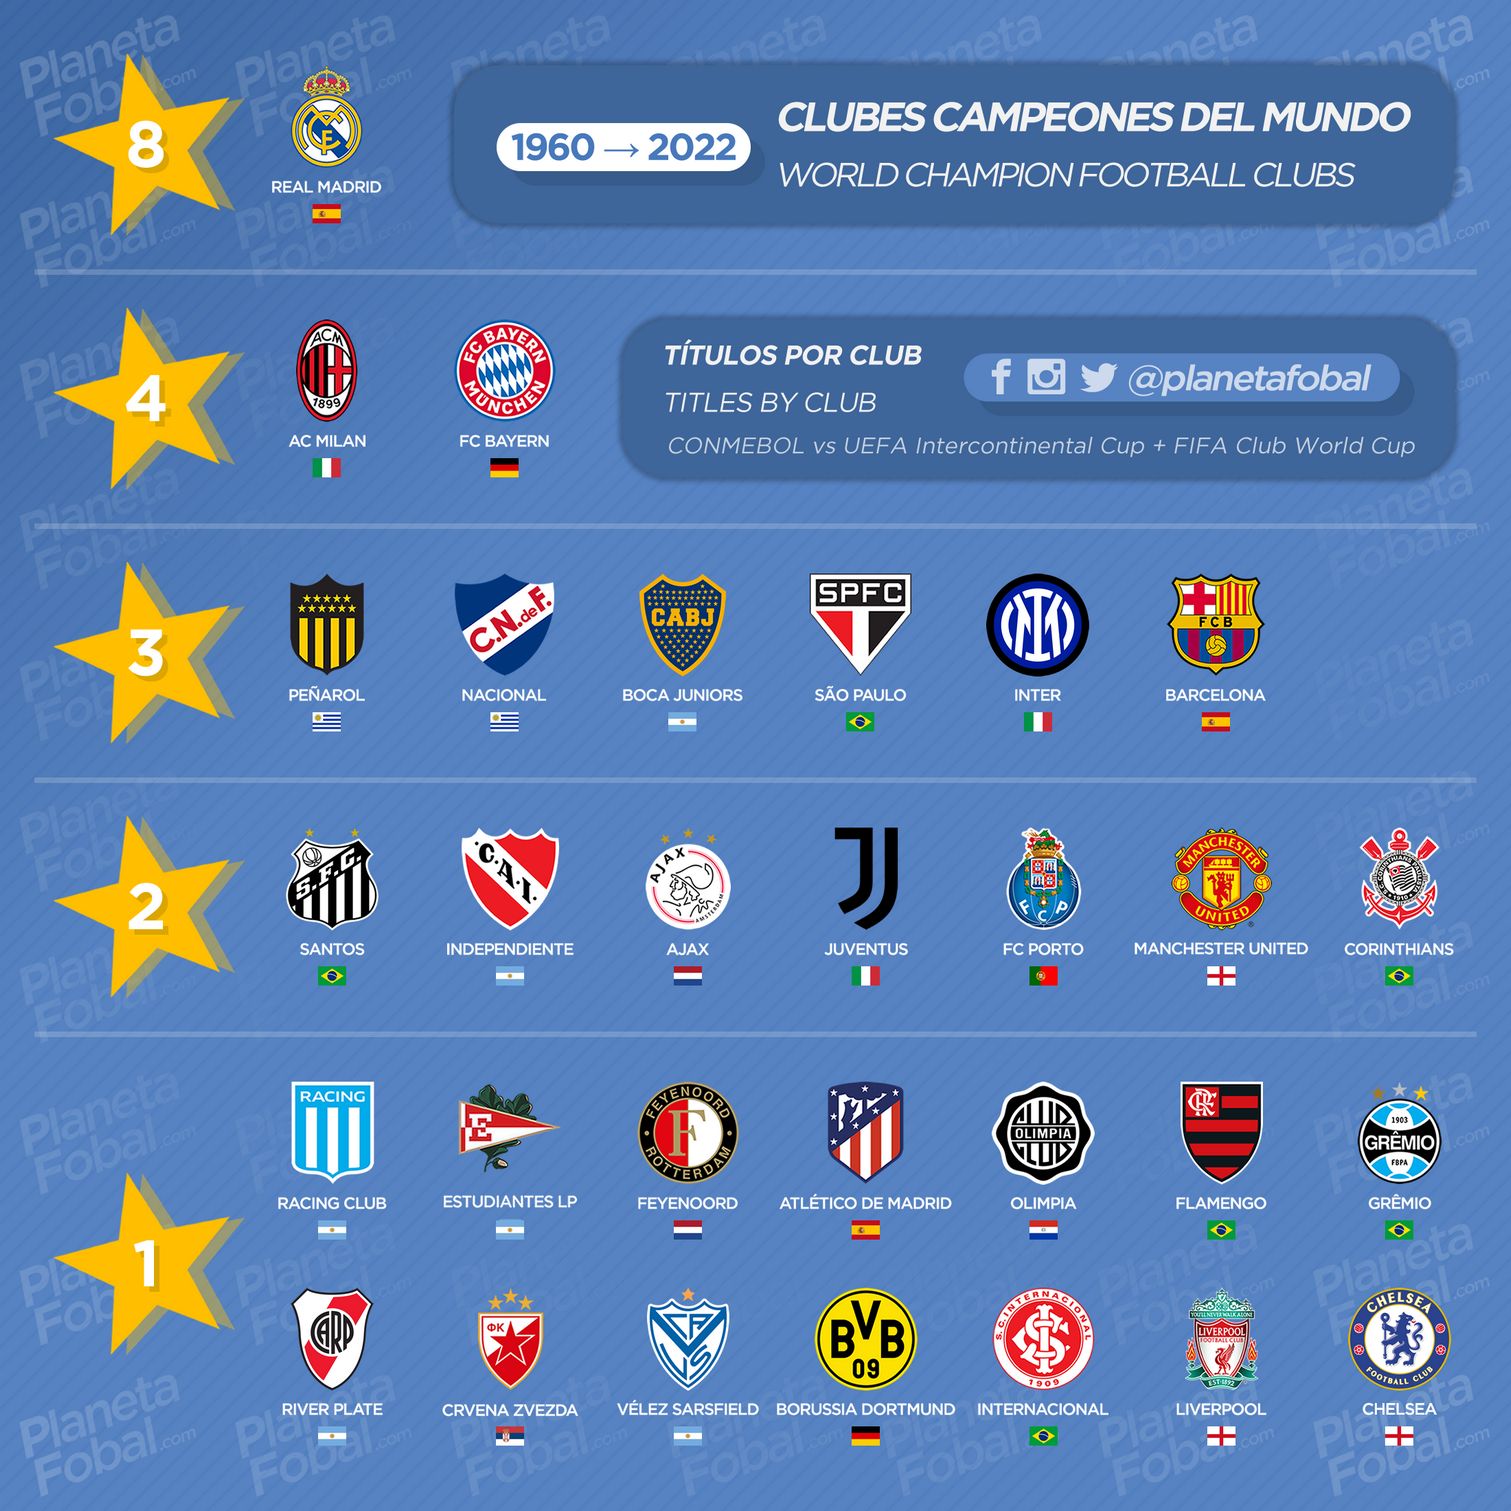 Clubes "Campeones del mundo" 1960 → 2022